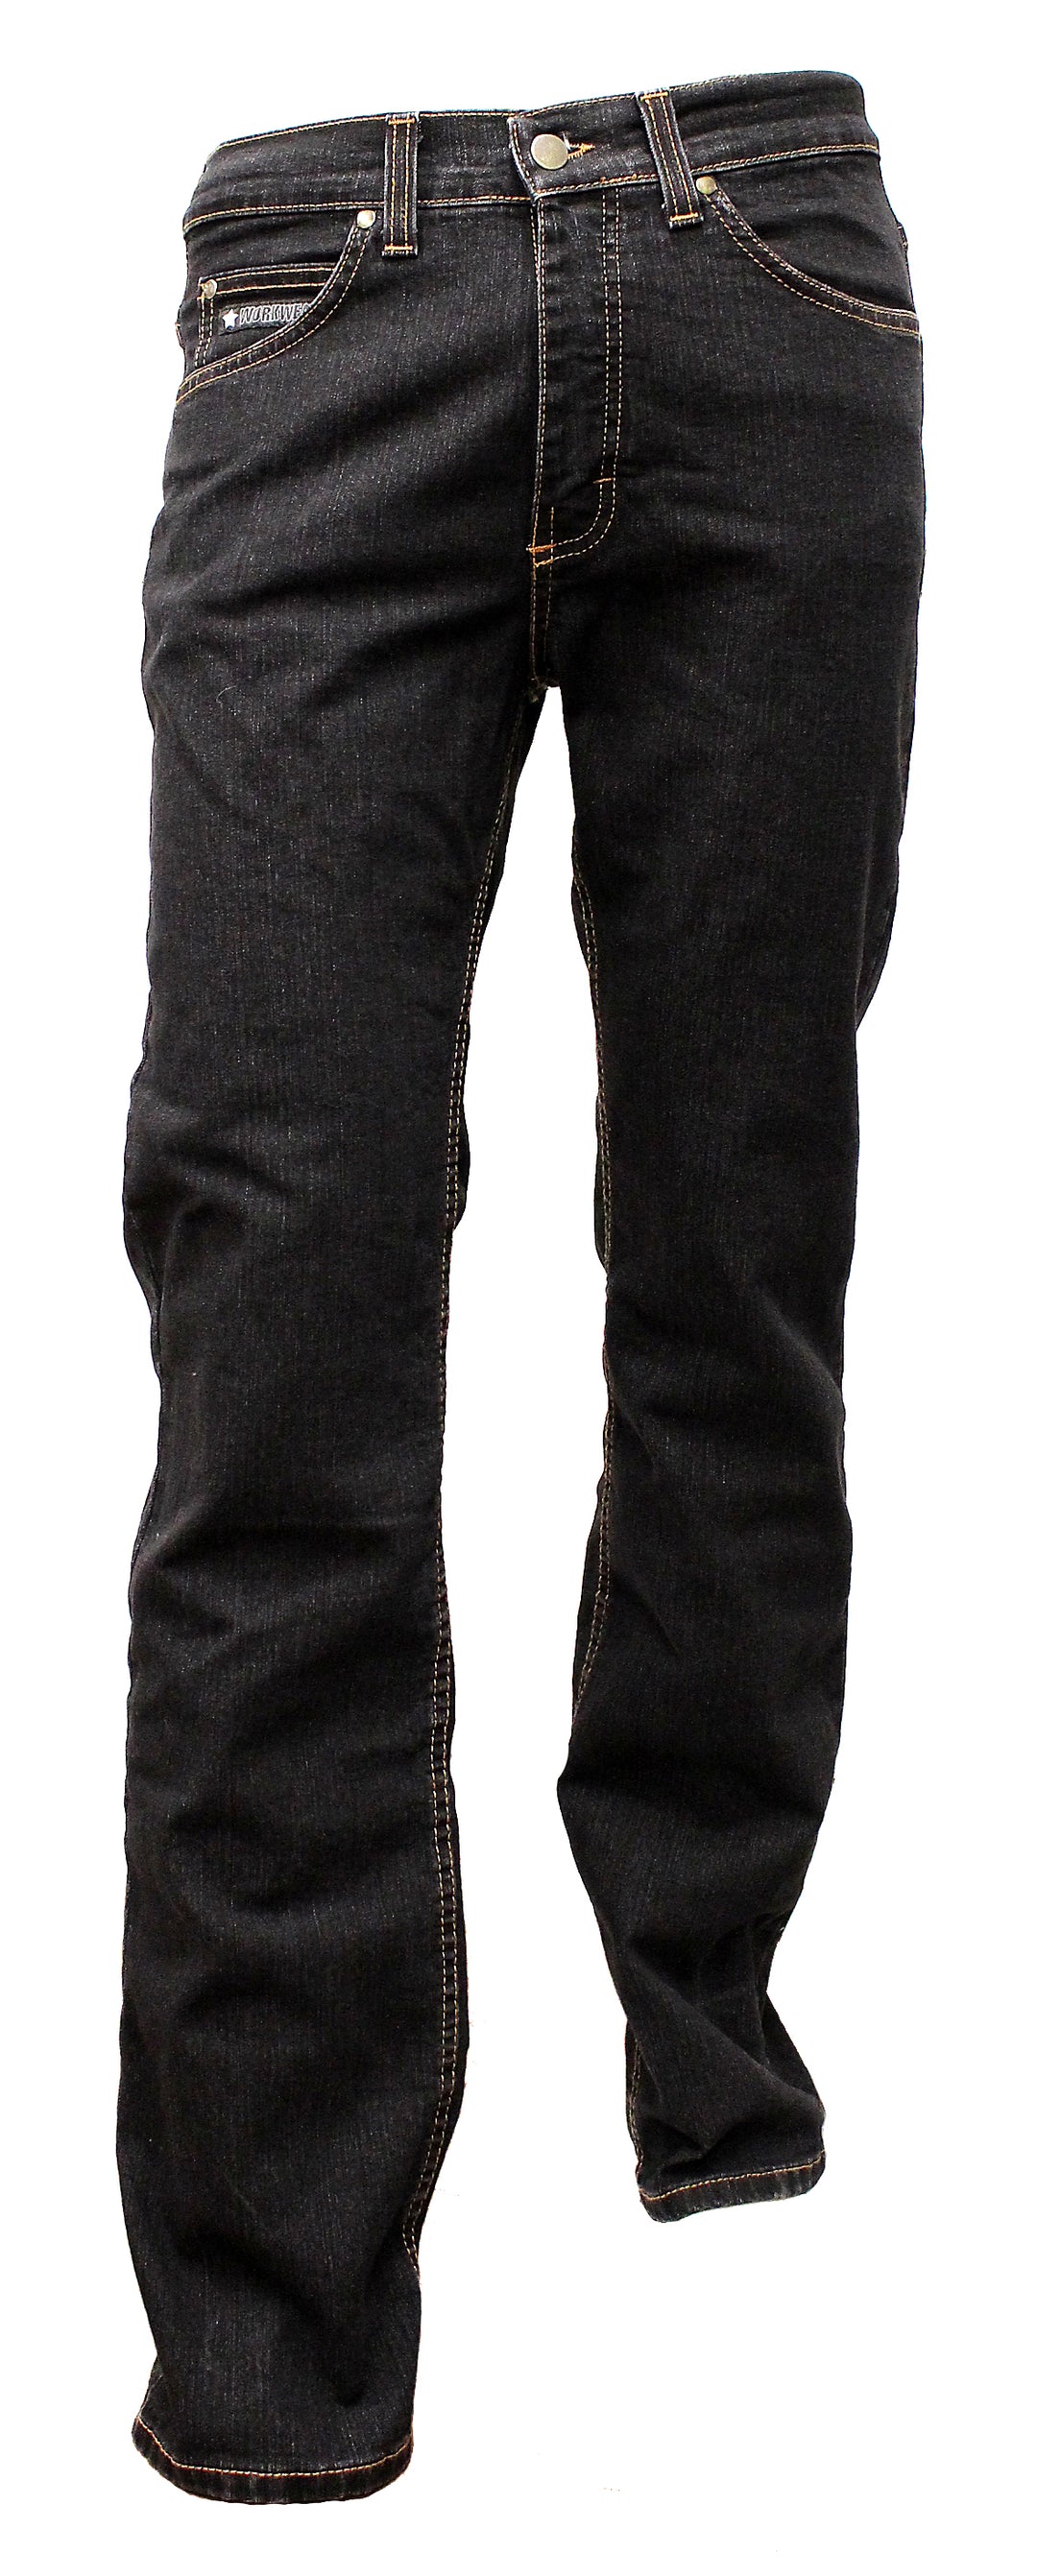 Men's work jeans length 34